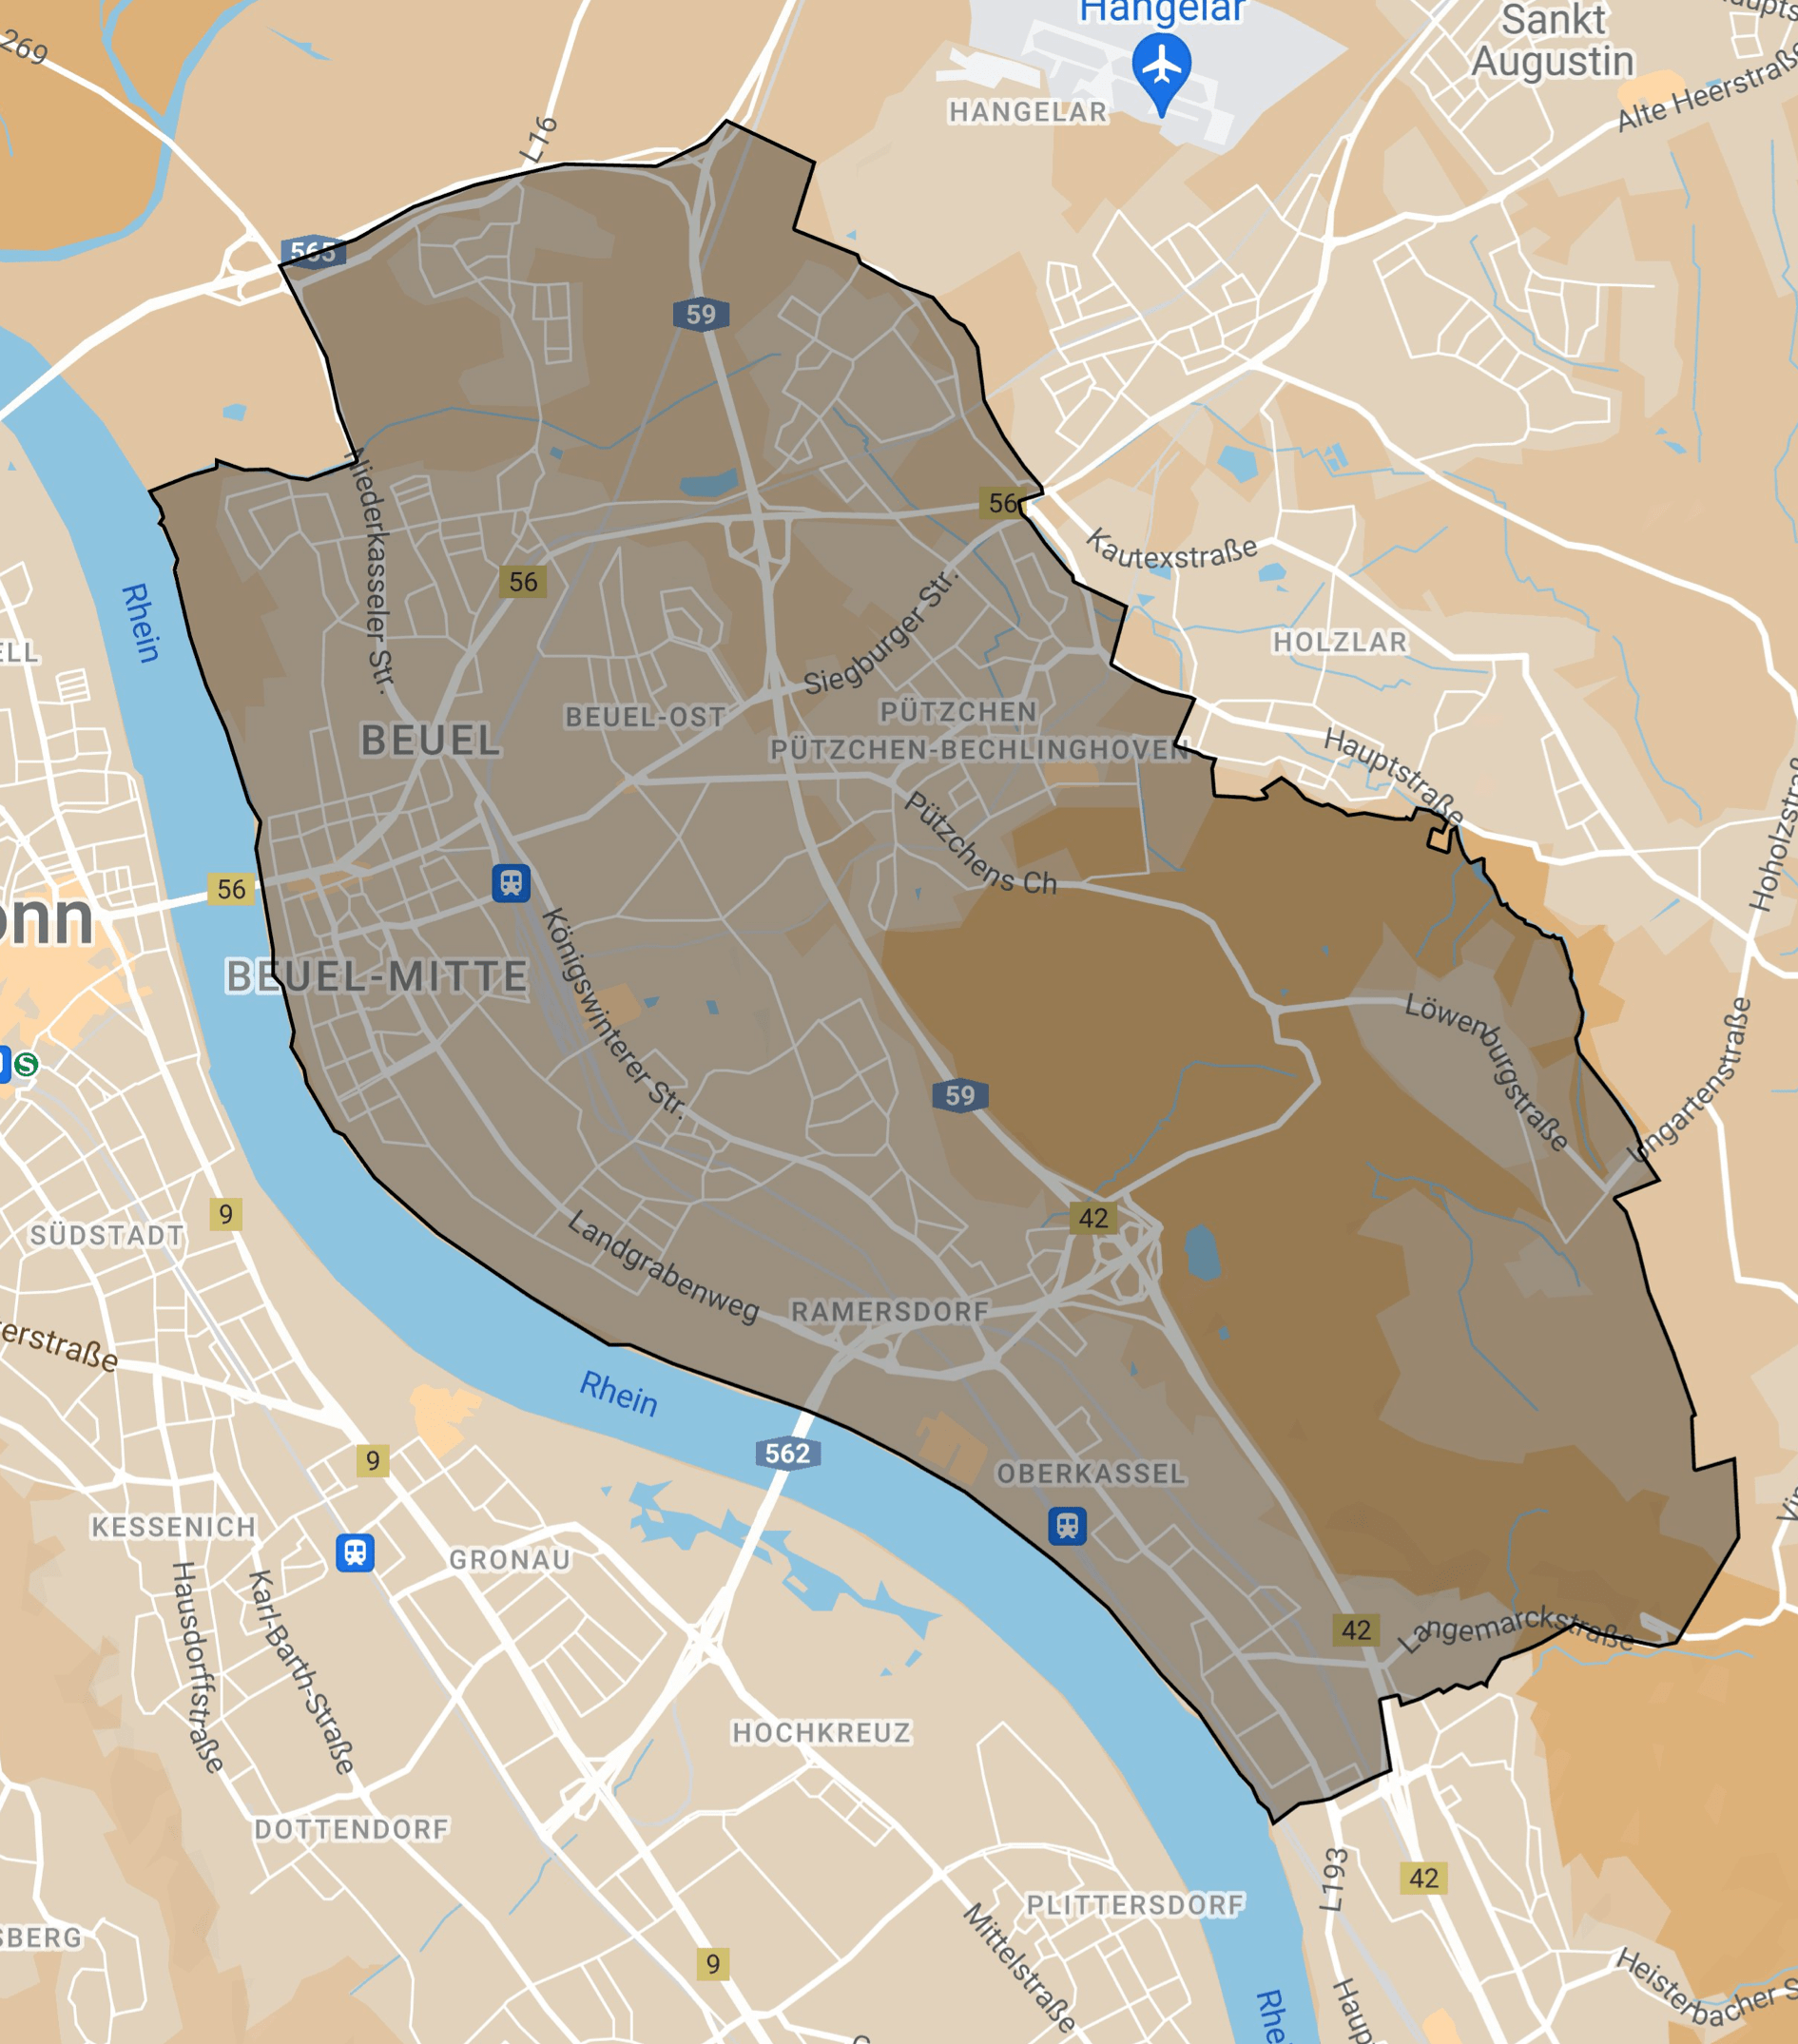 Karte des Teilnahmegebiets Bonn Beuel (in grau gekennzeichnet)